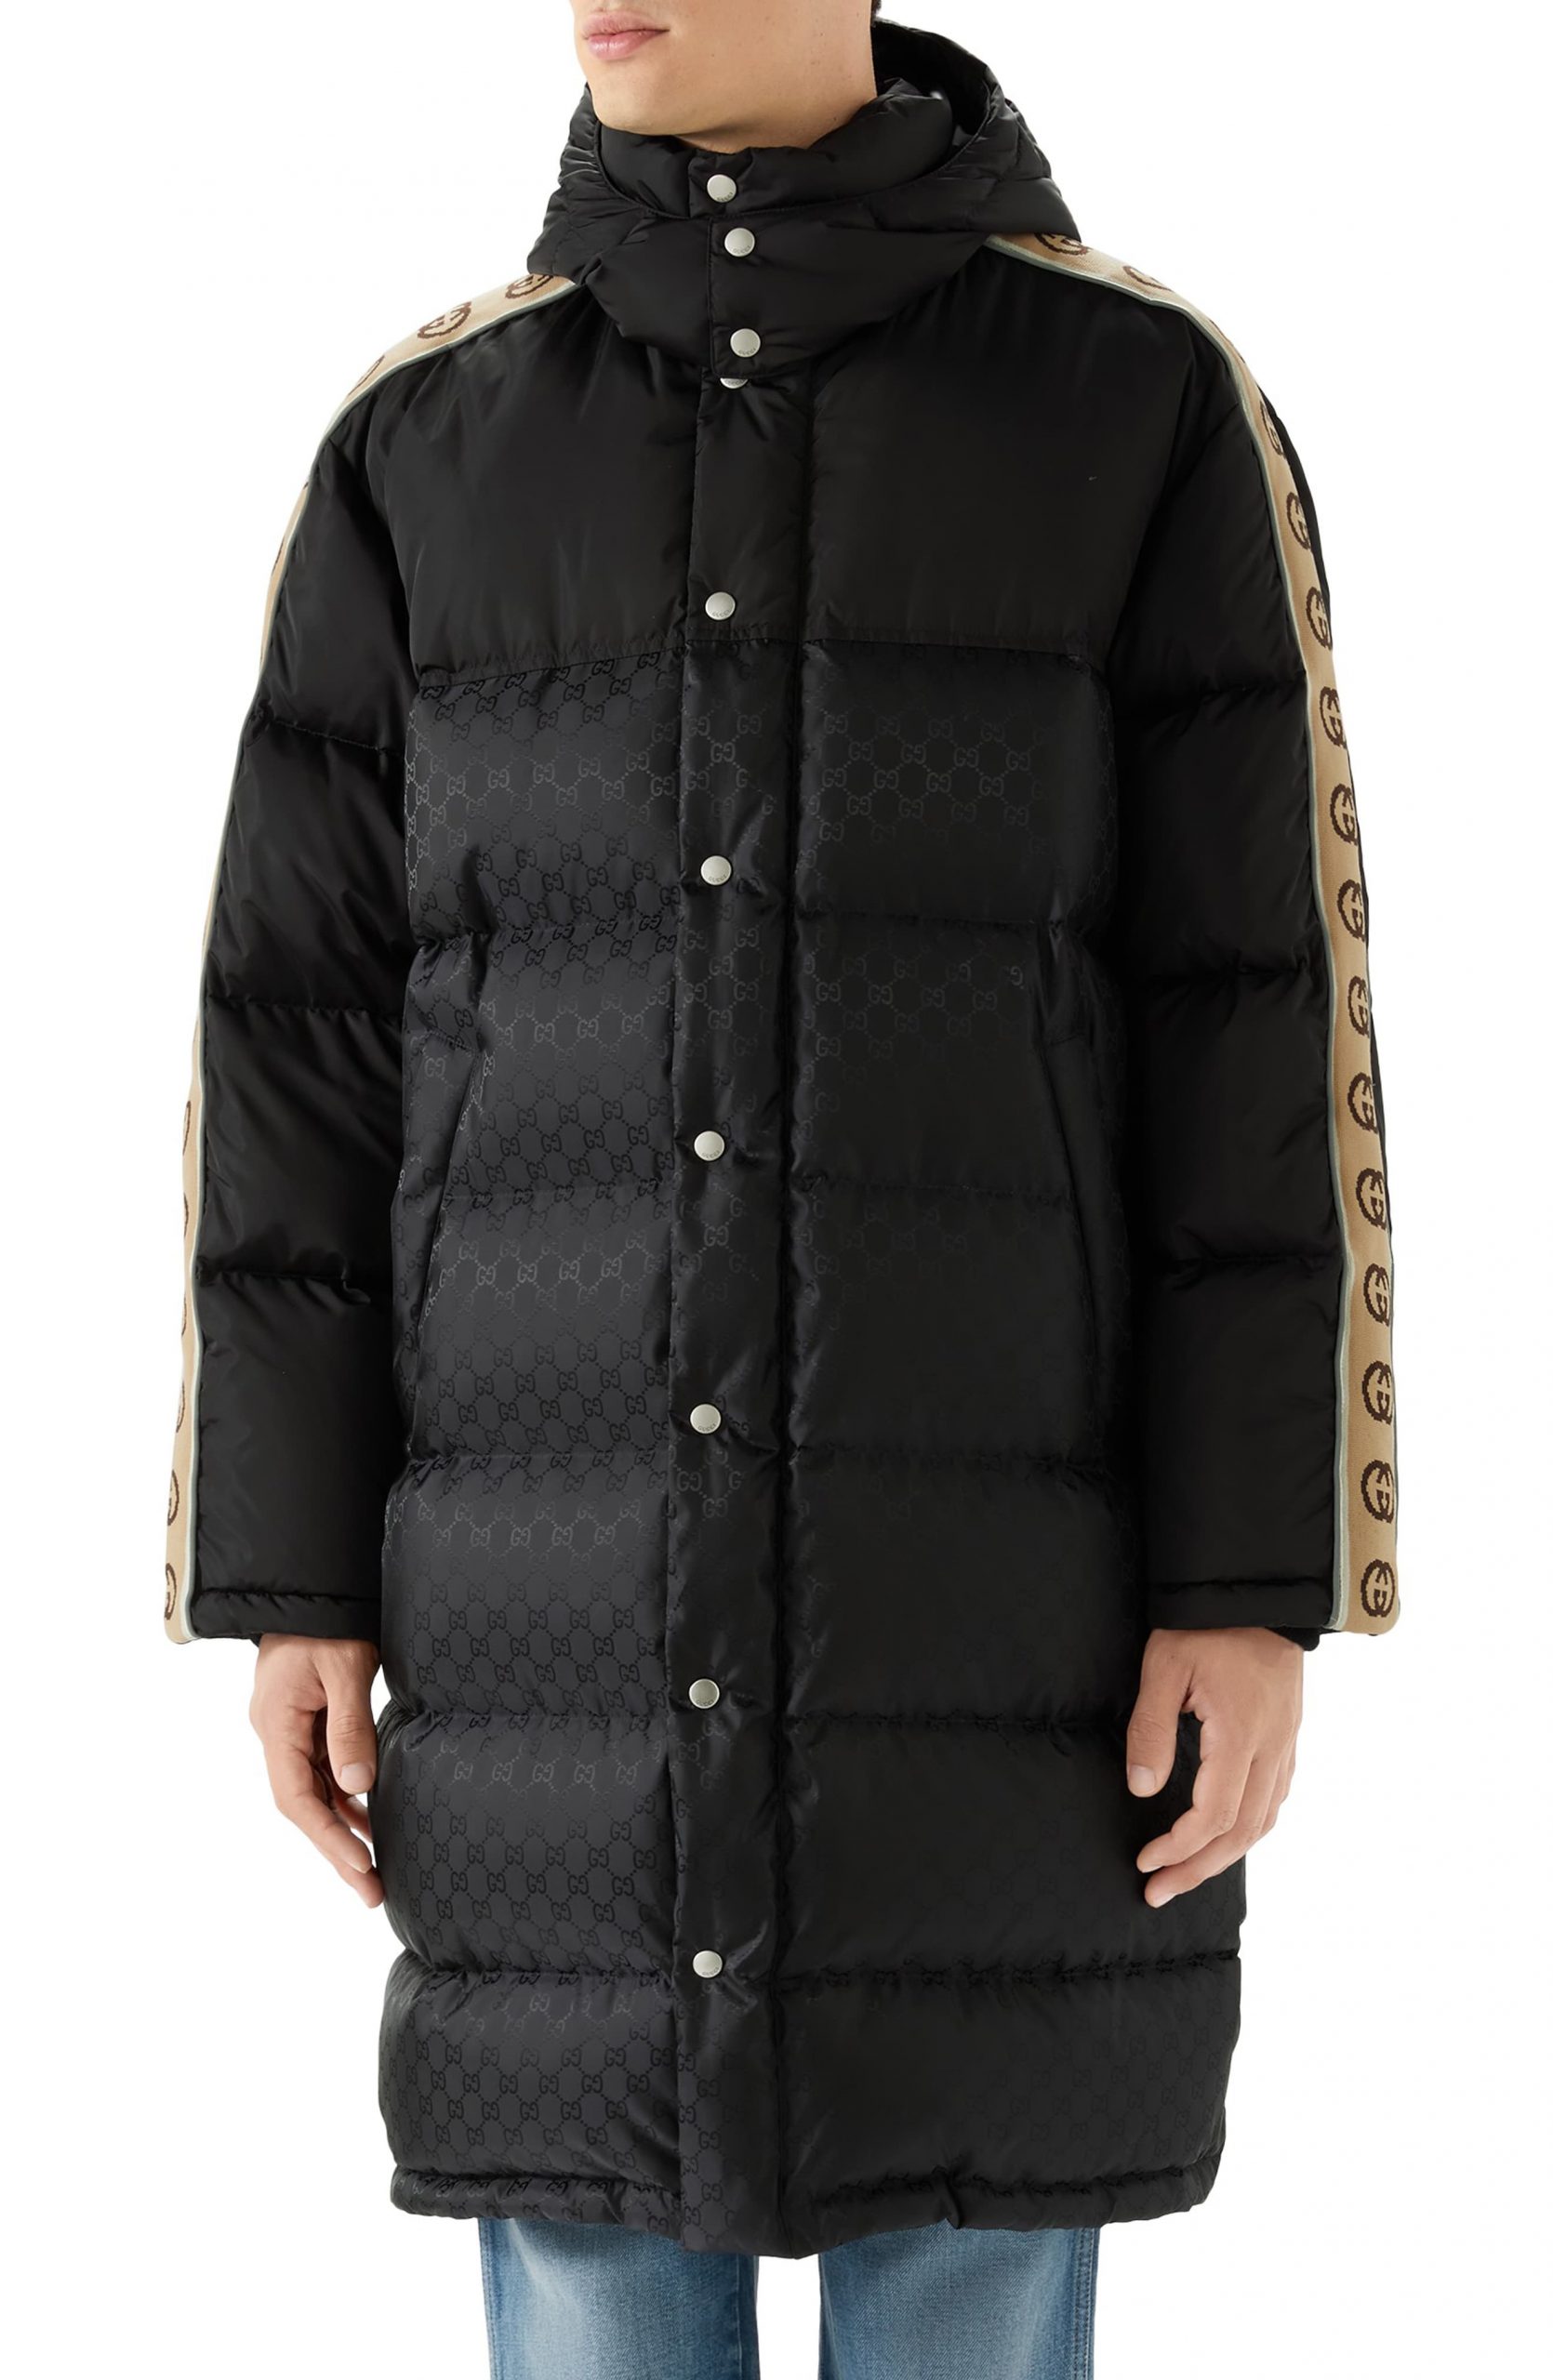 gucci men's coats & jackets